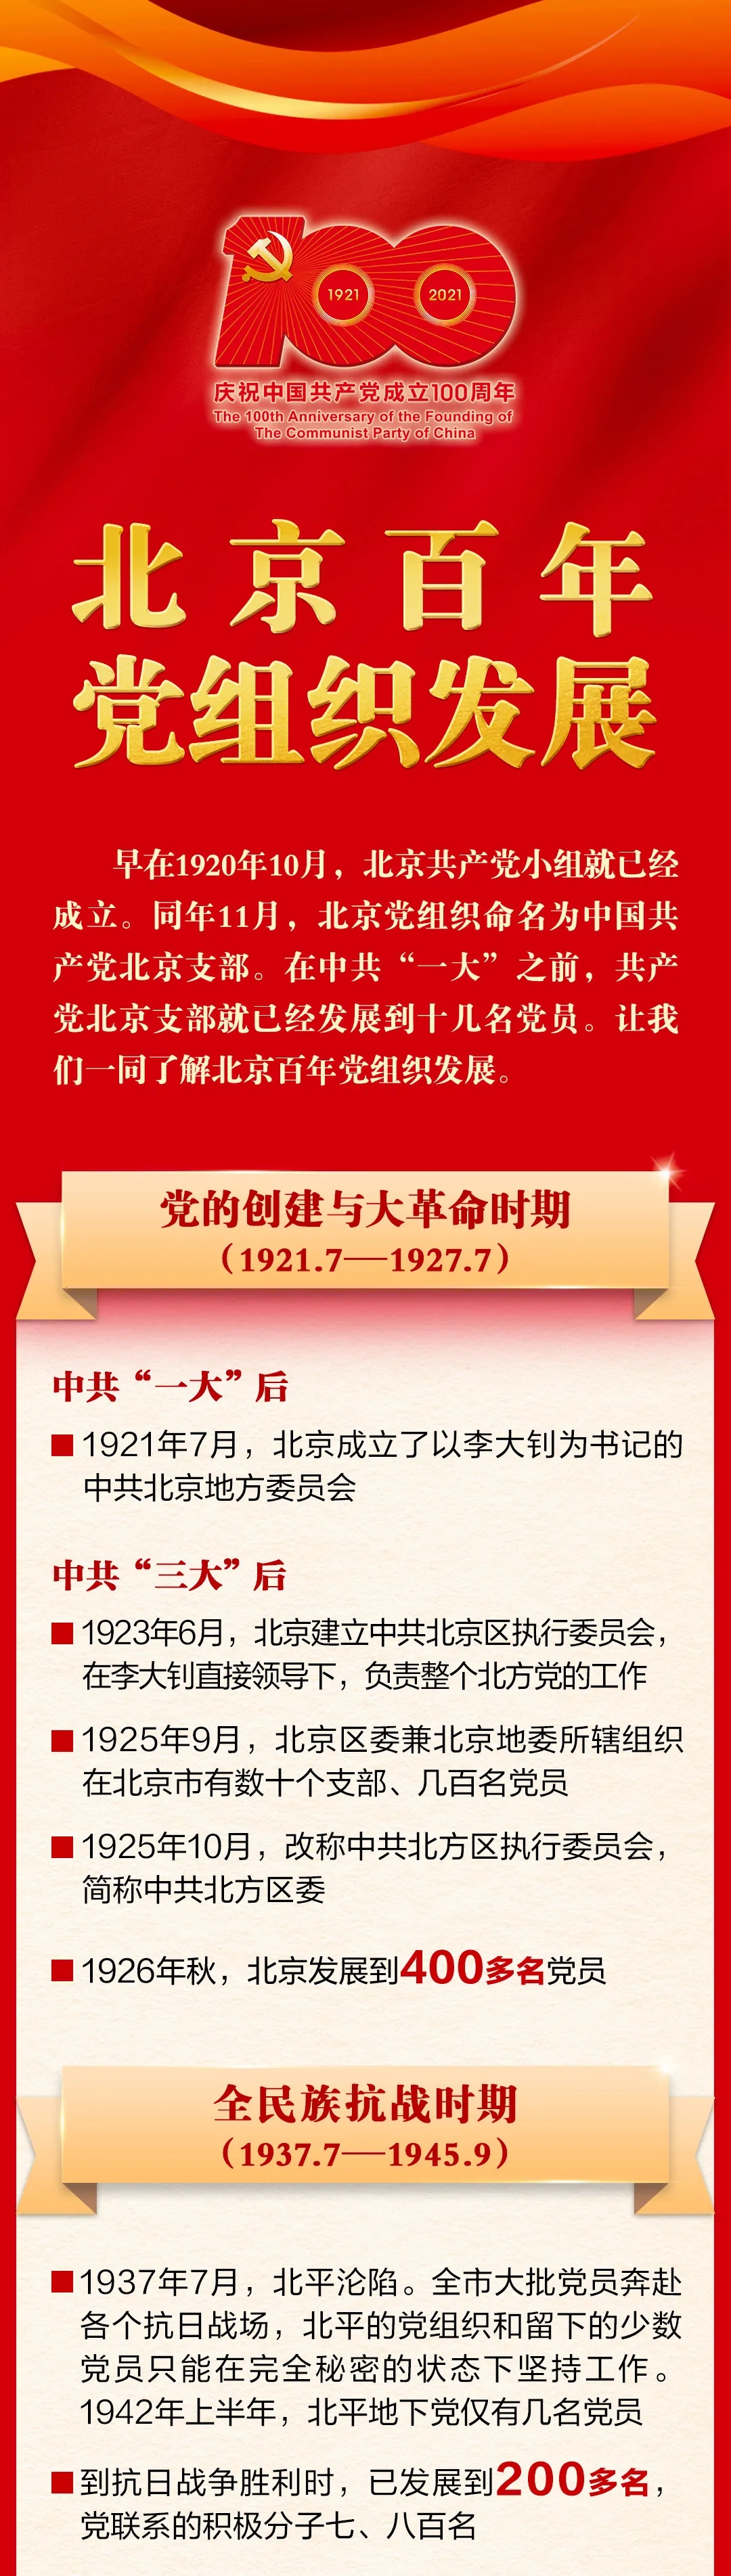 一图读懂|重温北京百年党组织发展史 牢记党的初心使命！